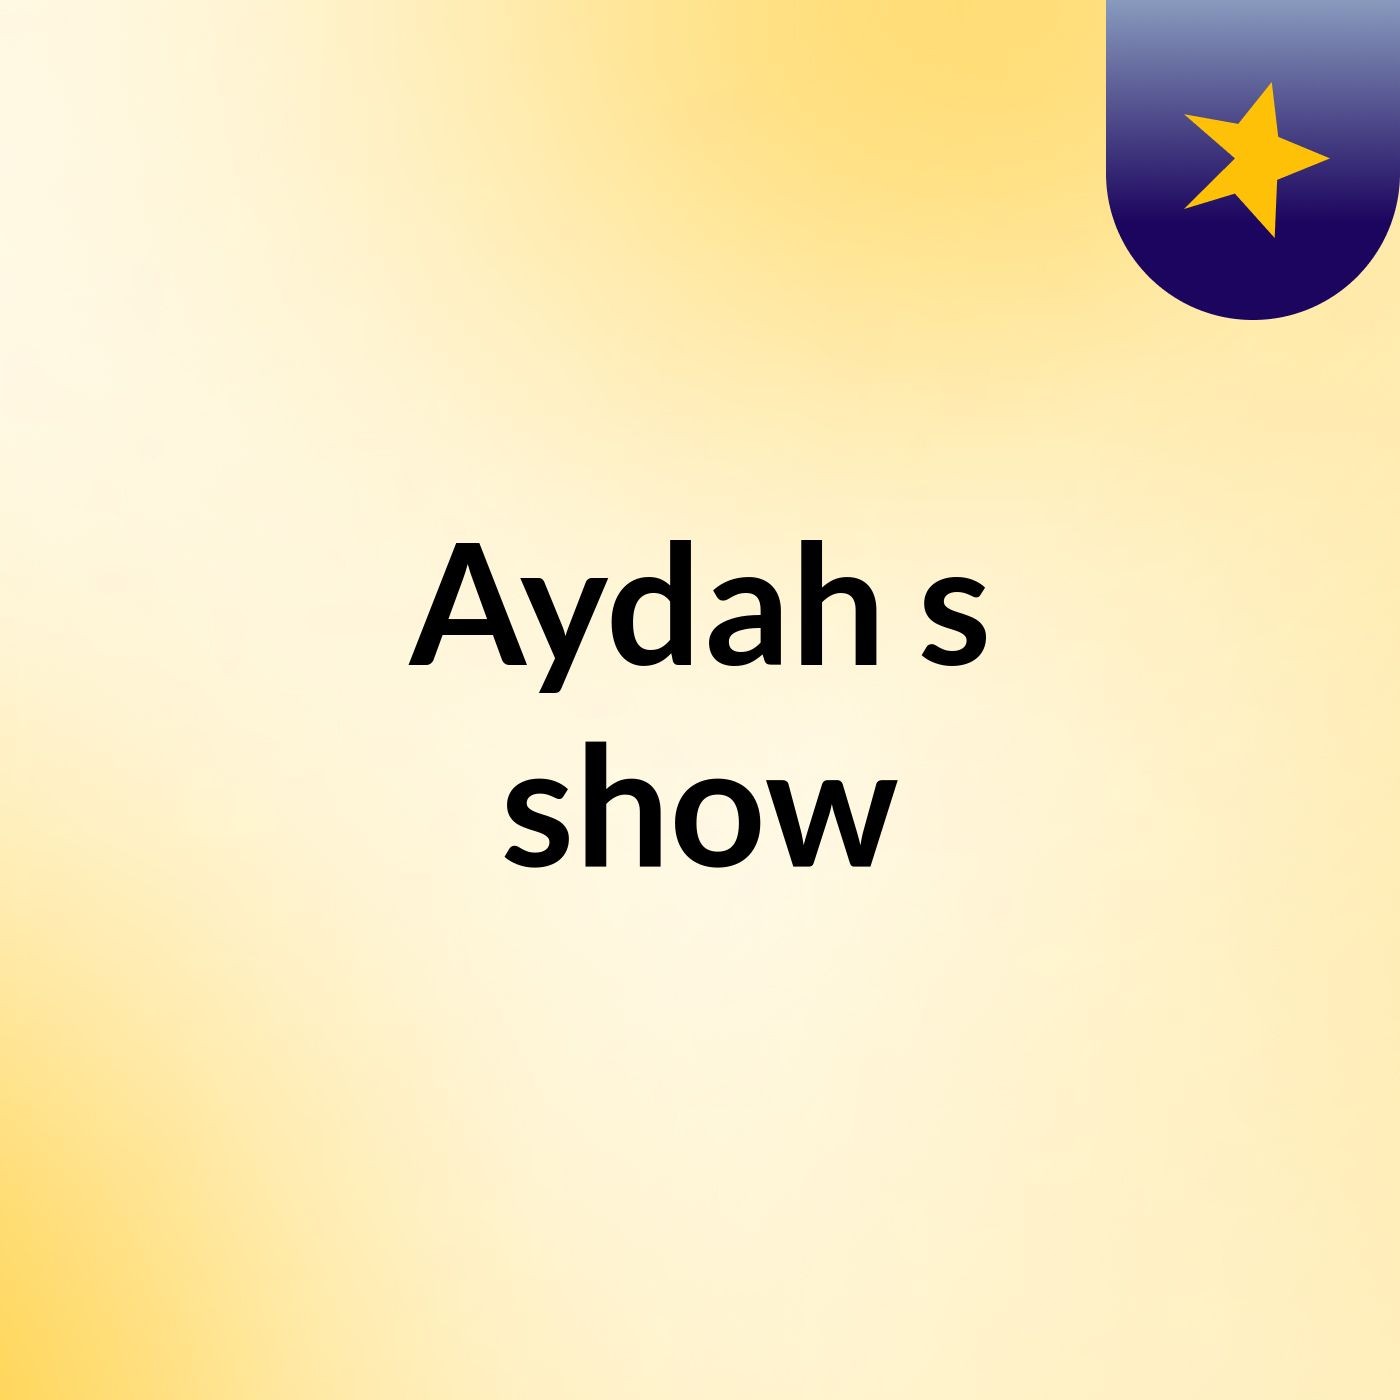 Aydah's show